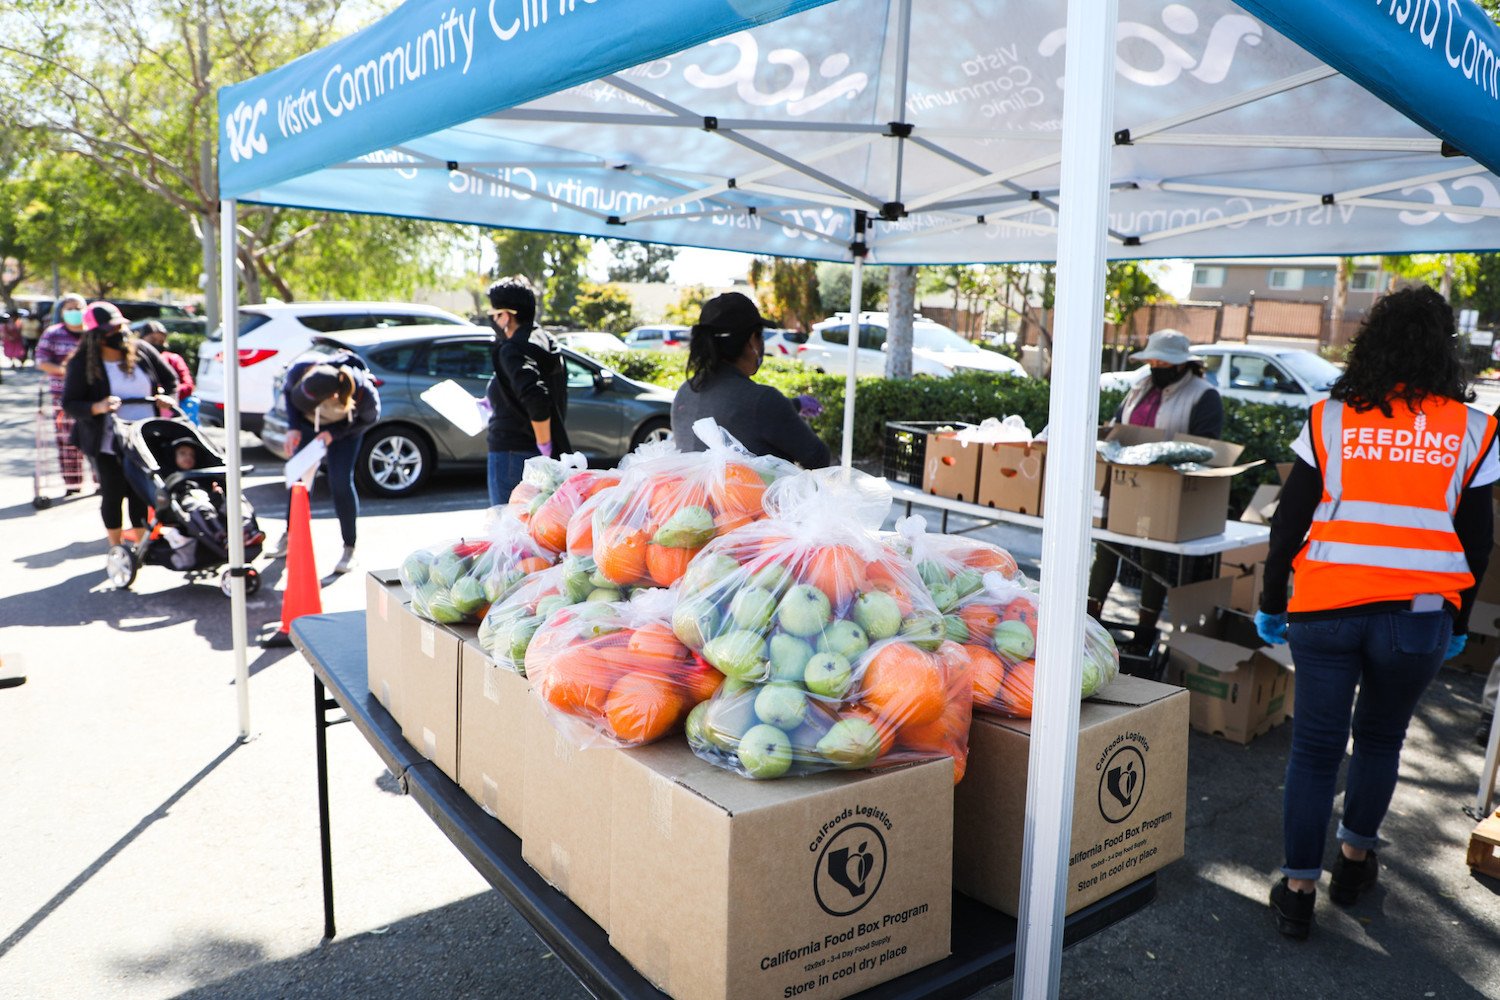 San Diego nonprofit Feeding San Diego's mobile Pantry free food distribution